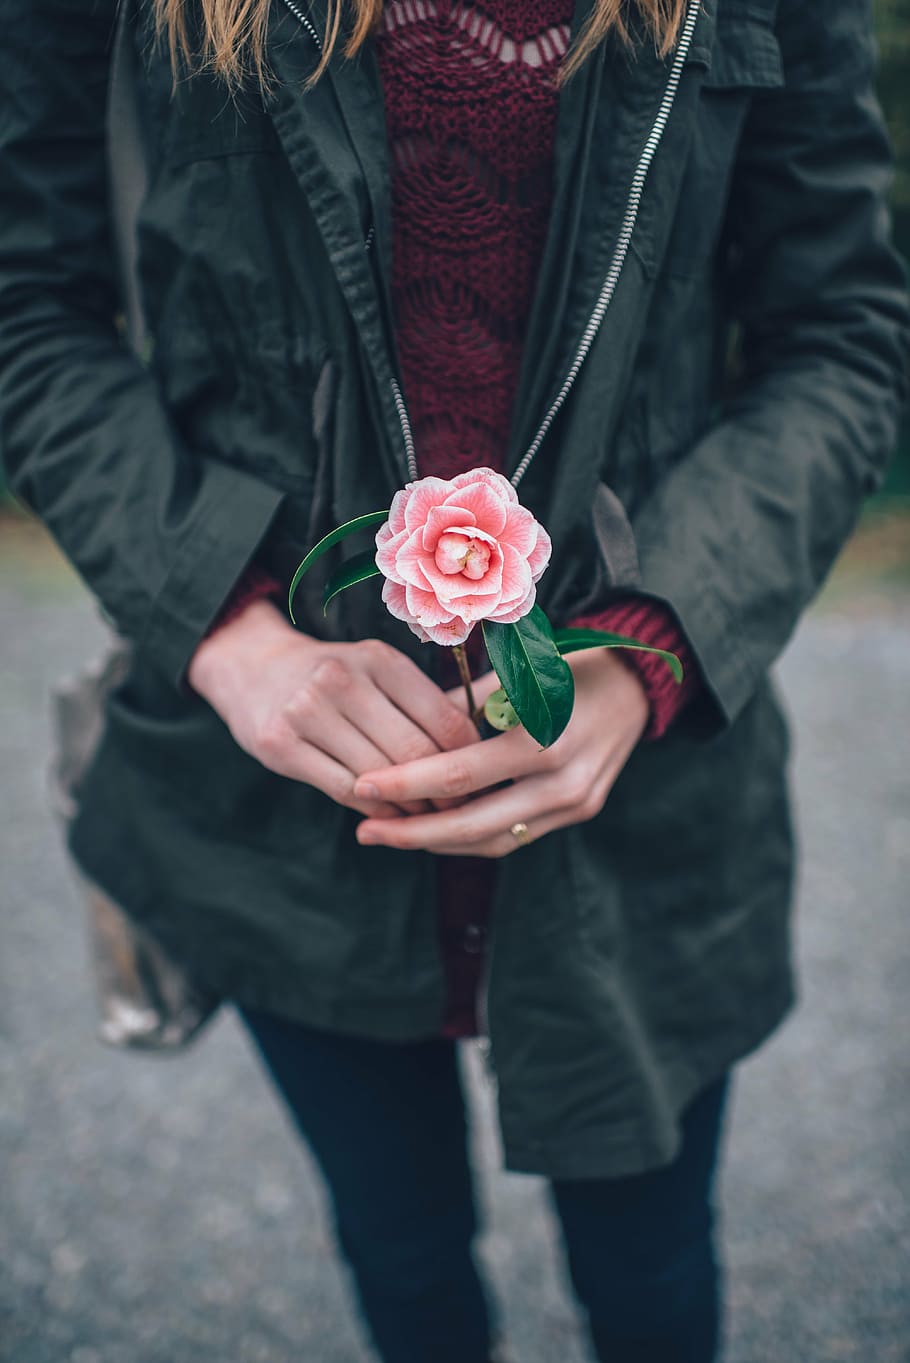 fotografía, mujer, negro, chaqueta, tenencia, rosado, flor, rosa, sosteniendo flor, manos